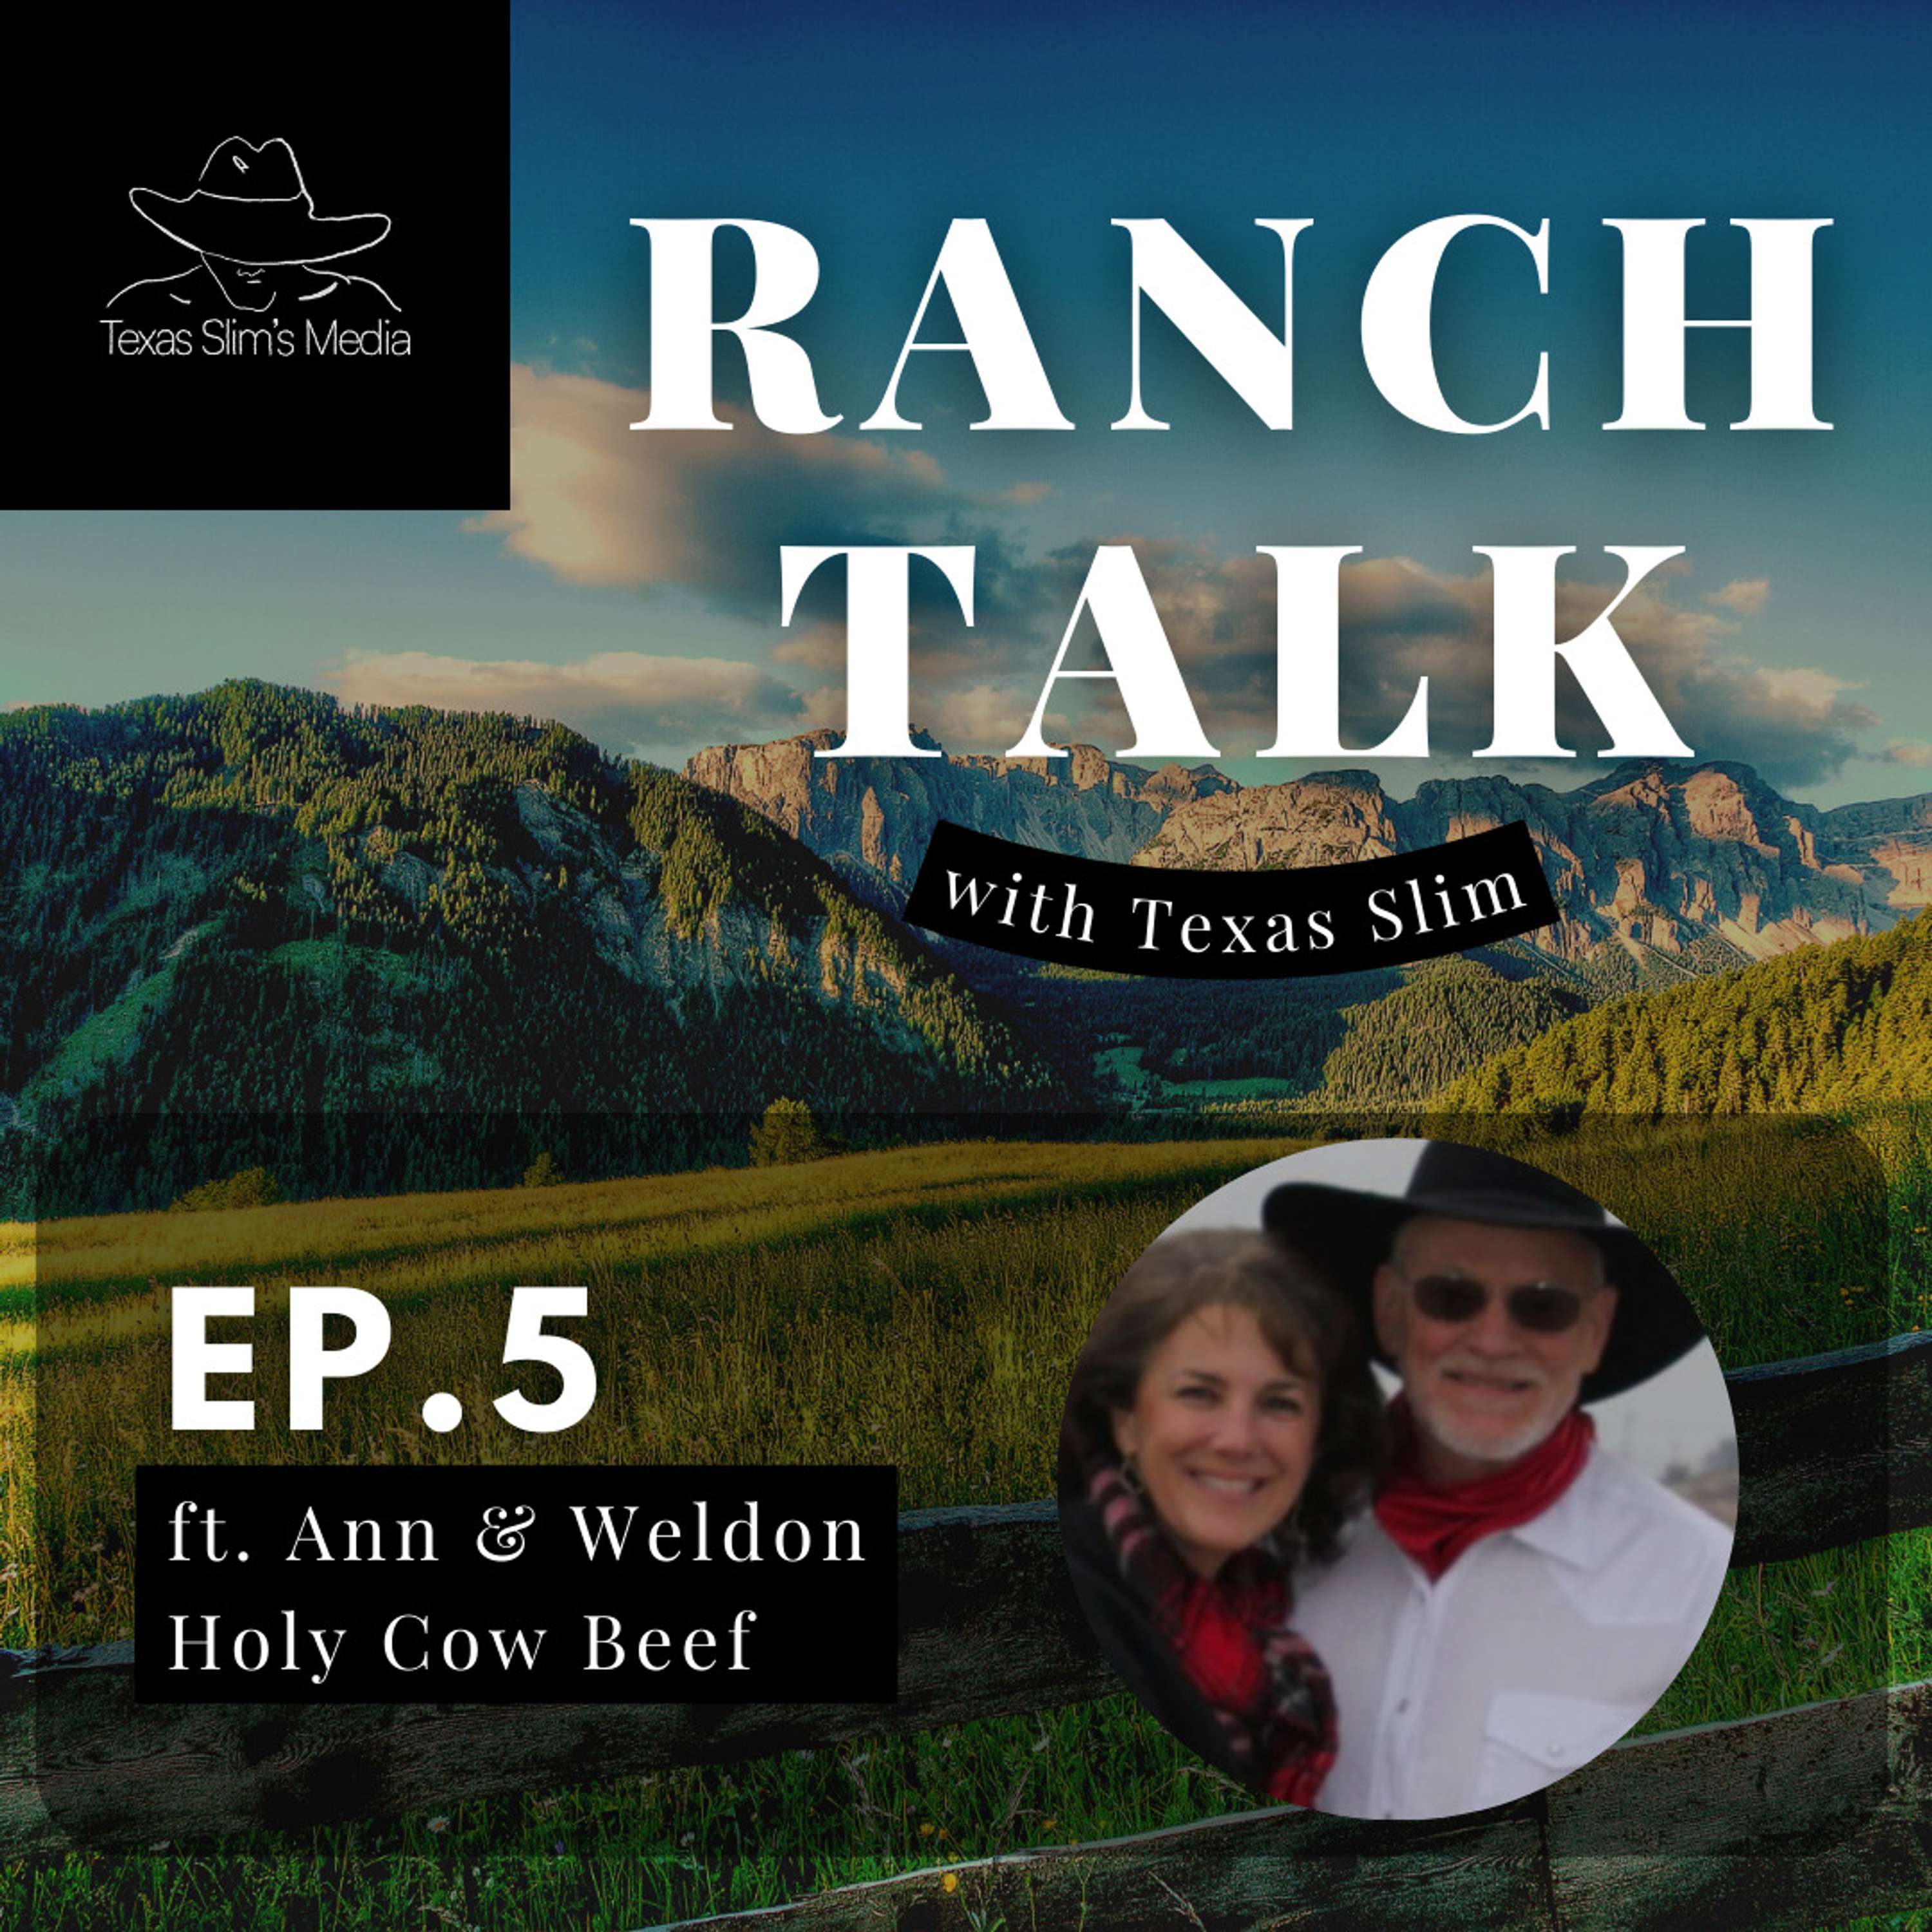 Episode 5 - Ranch Talk ft Ann & Weldon Warren